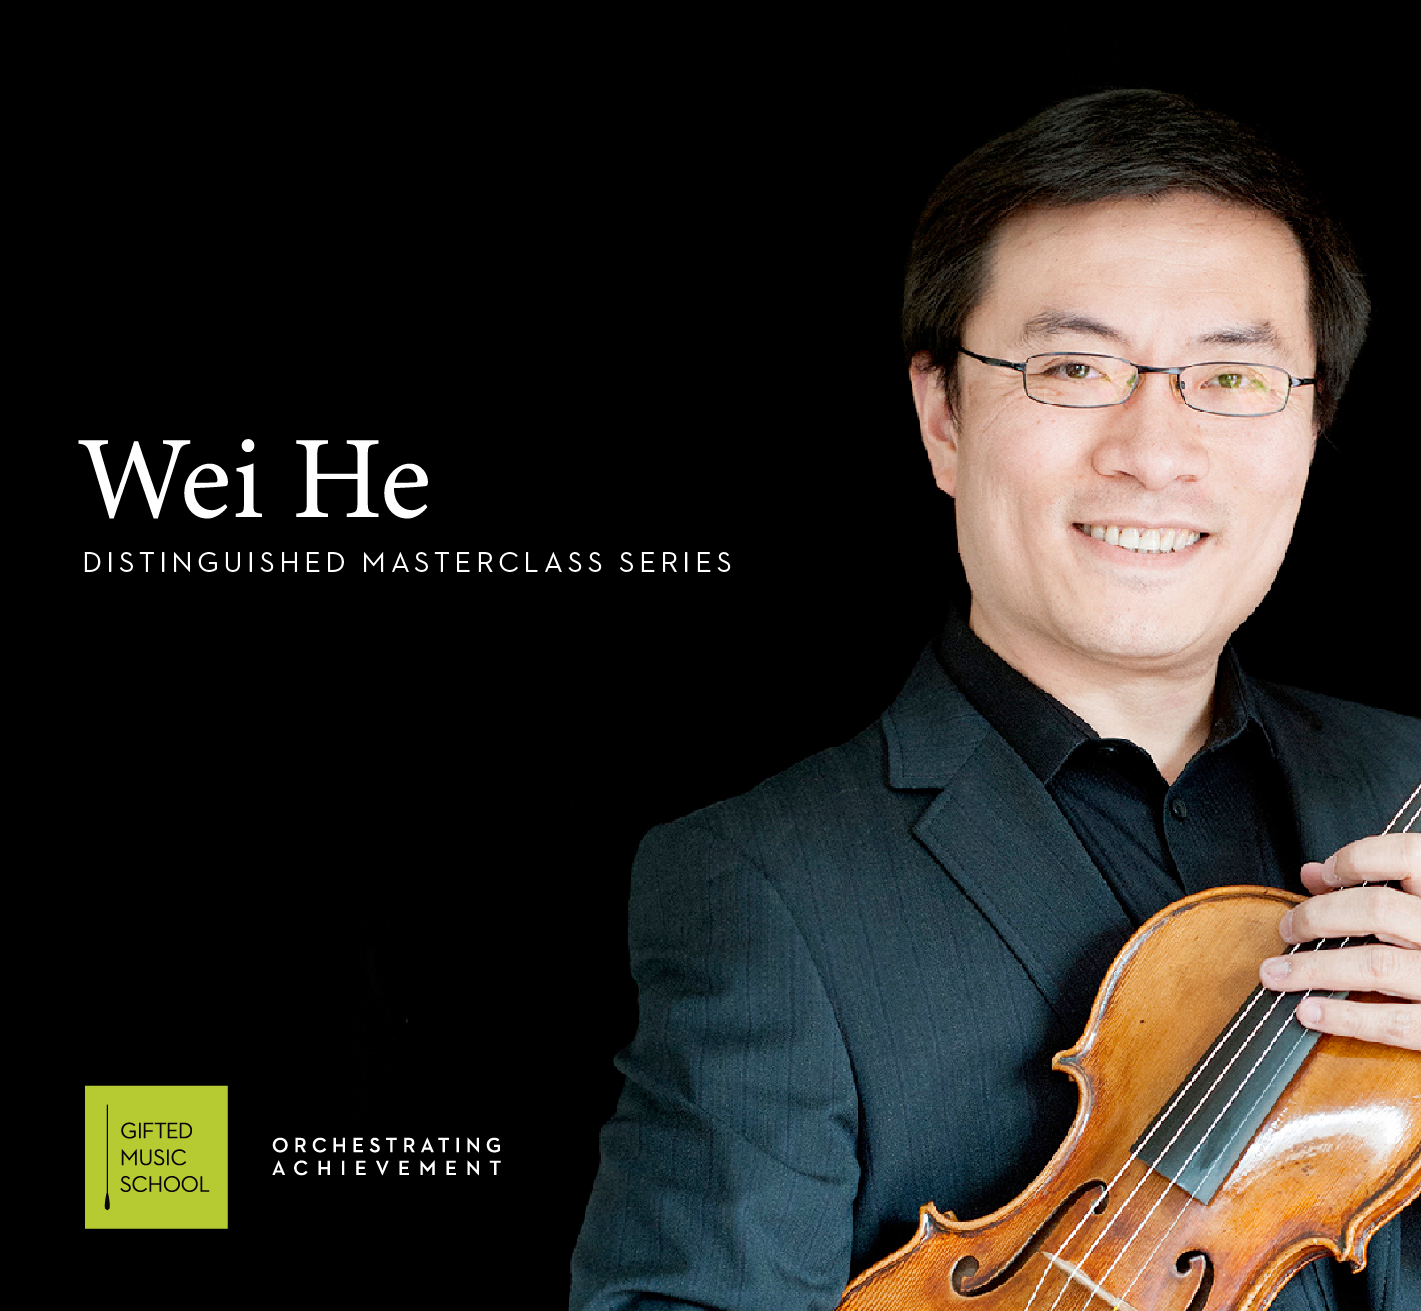 Wei He violin masterclass image